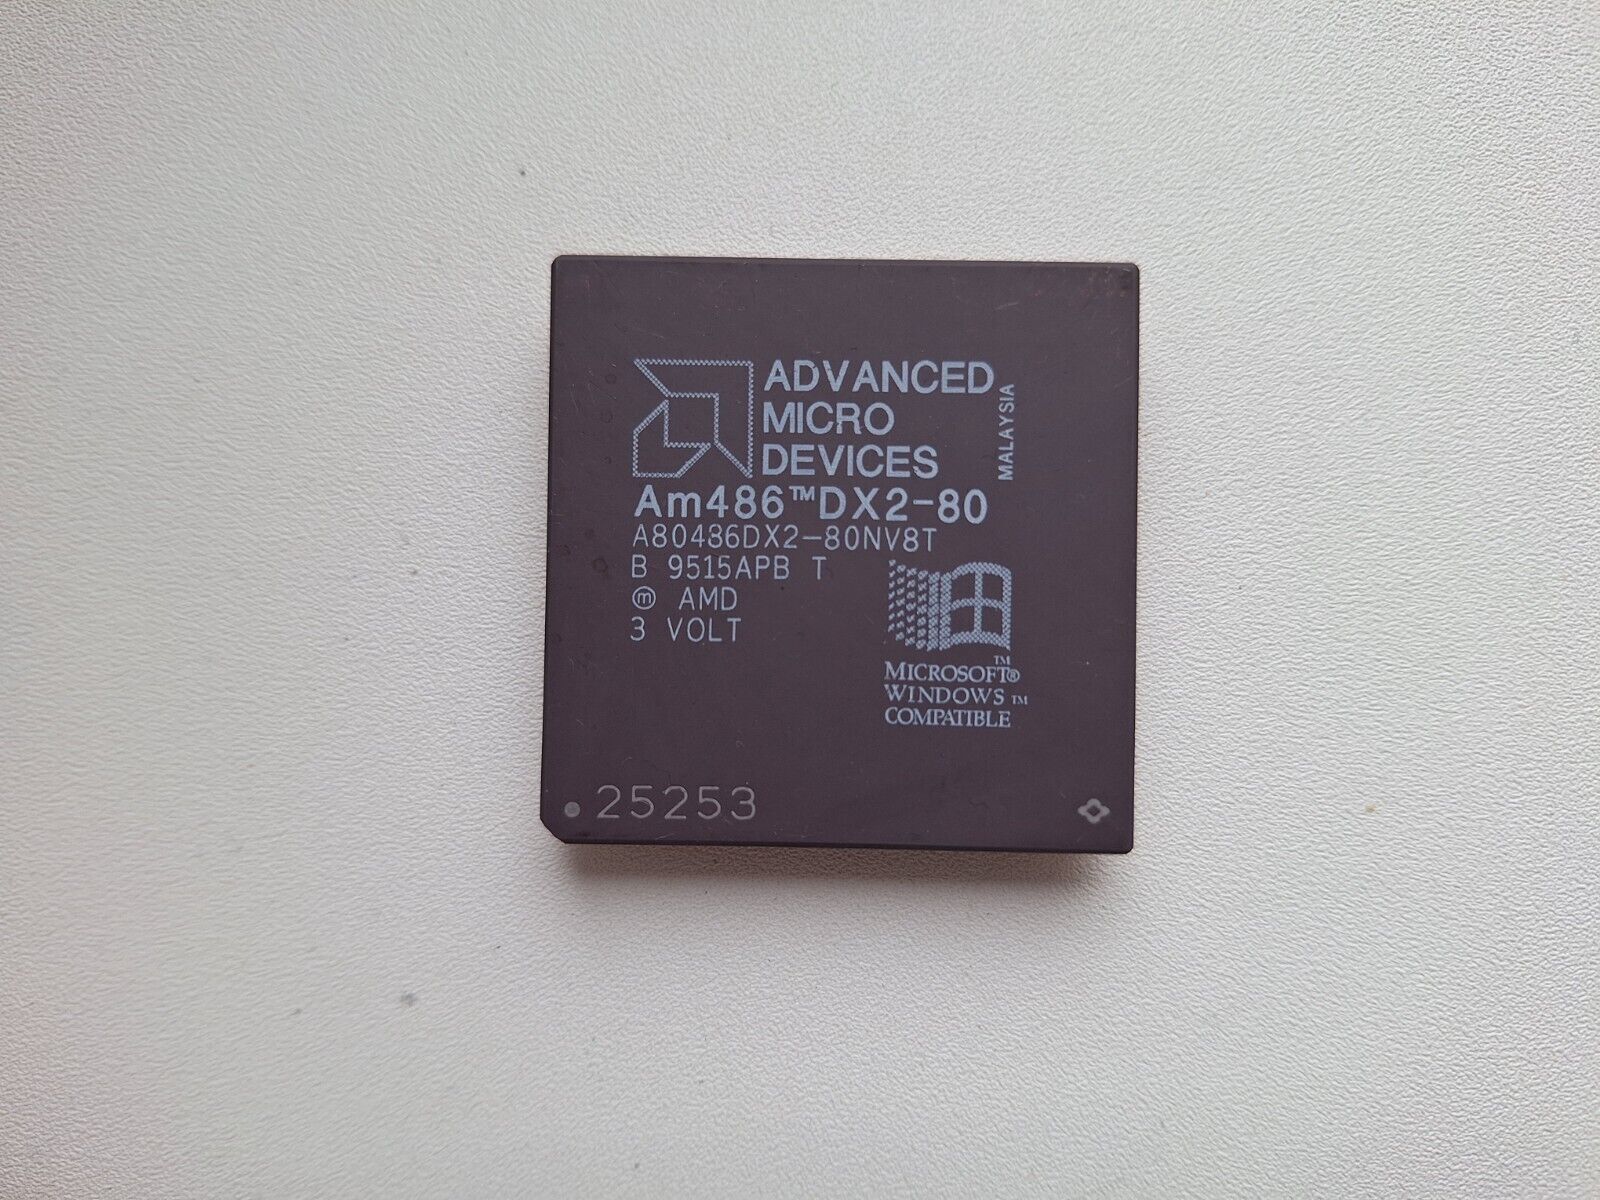 AMD Am486 DX2-80 NV8T A80486DX2-80 NV8T 3V Vintage CPU